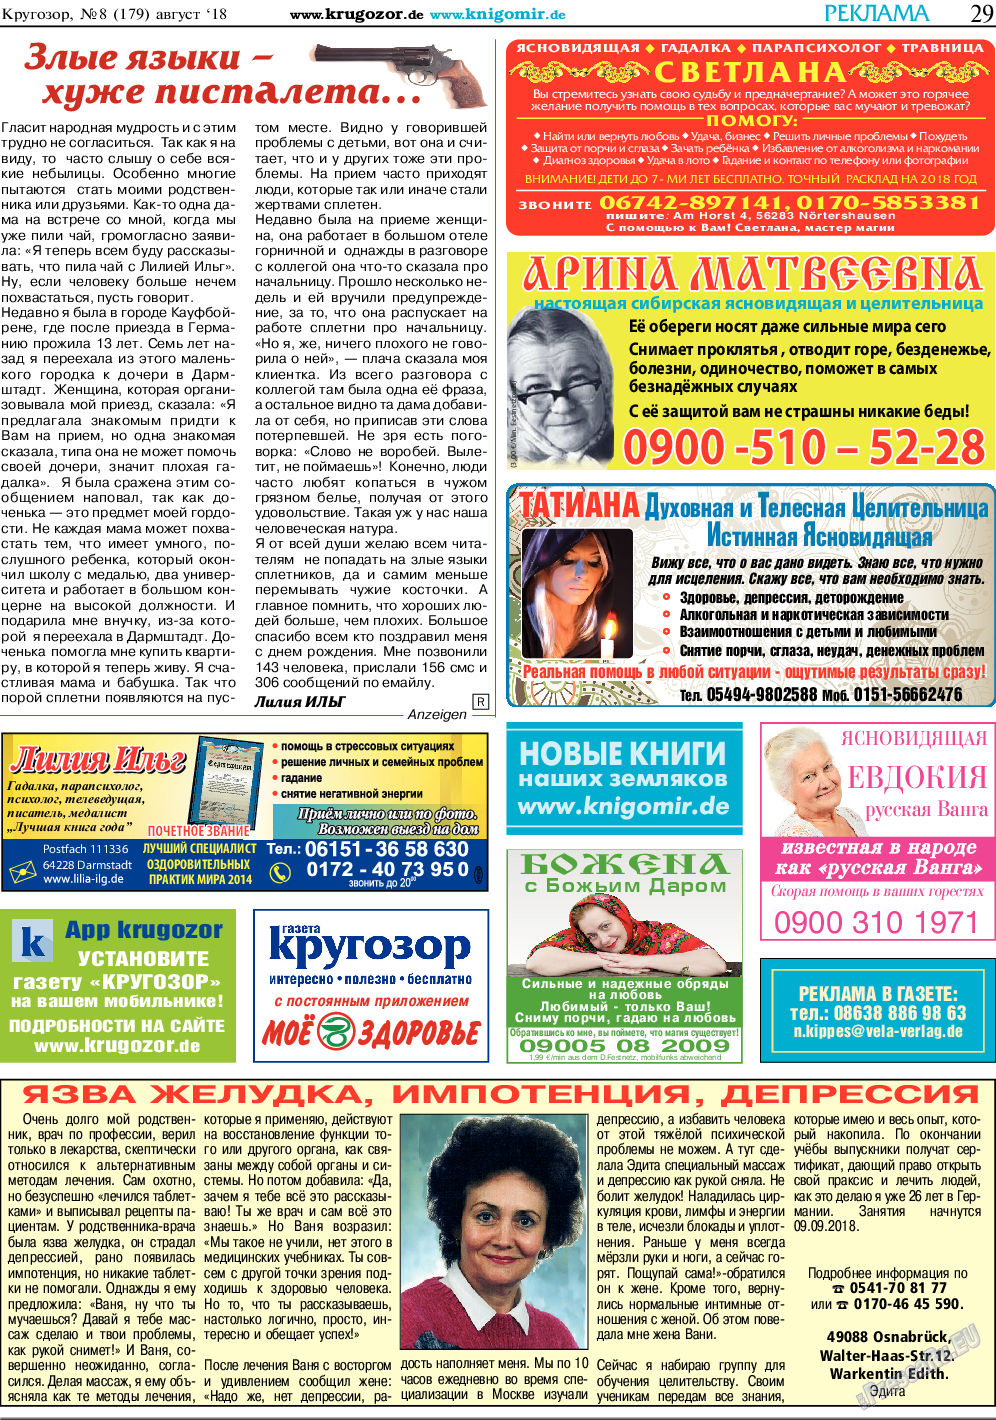 Кругозор, газета. 2018 №8 стр.29